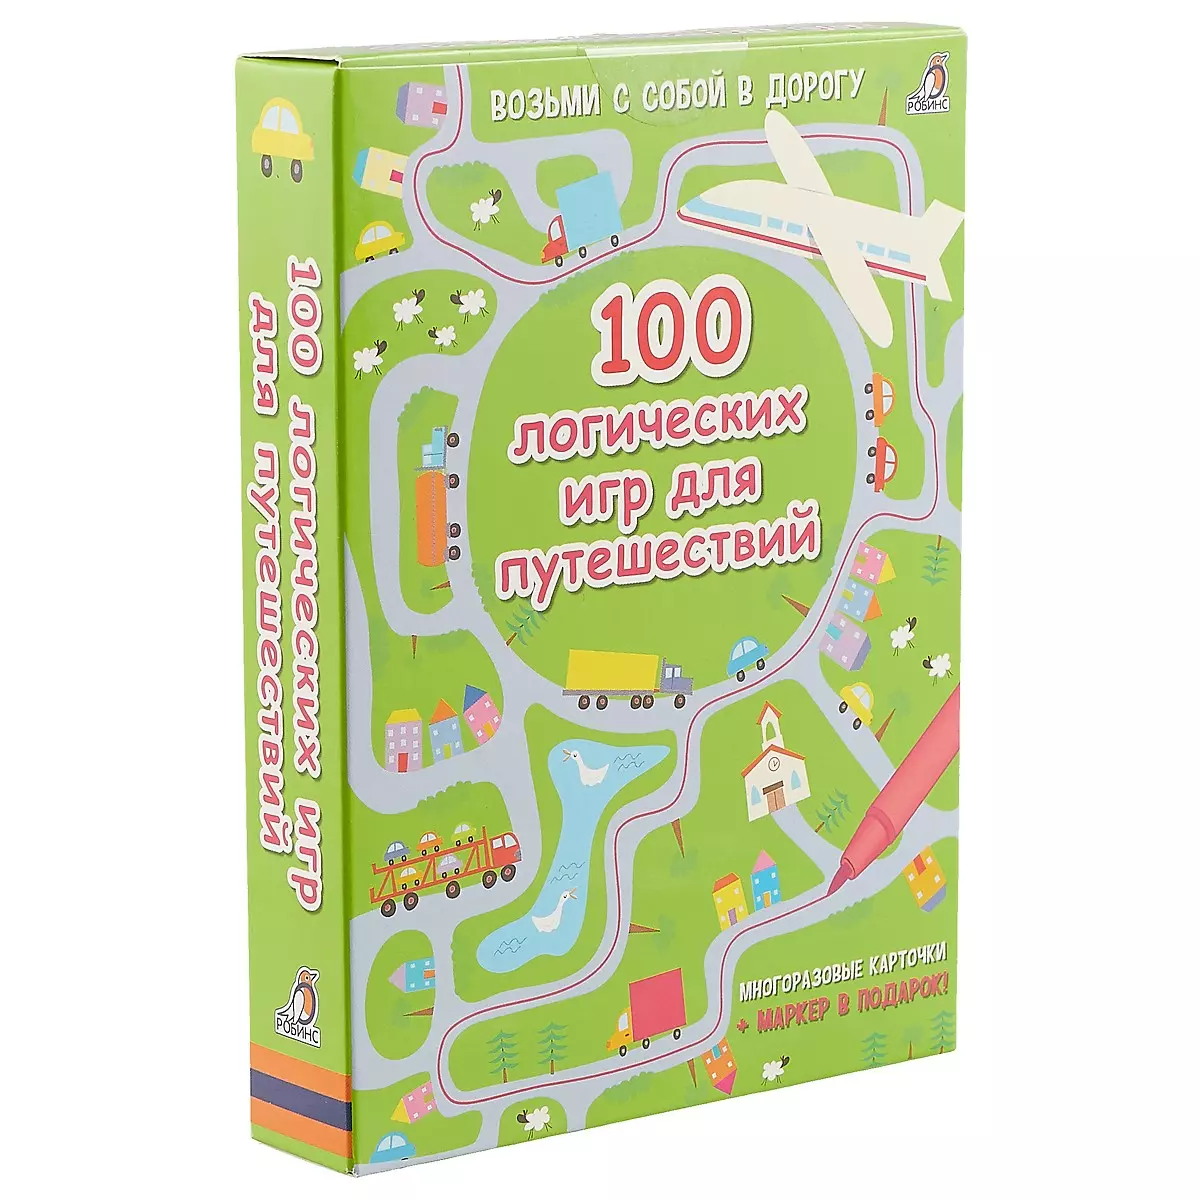  - 100 логических игр для путешествий